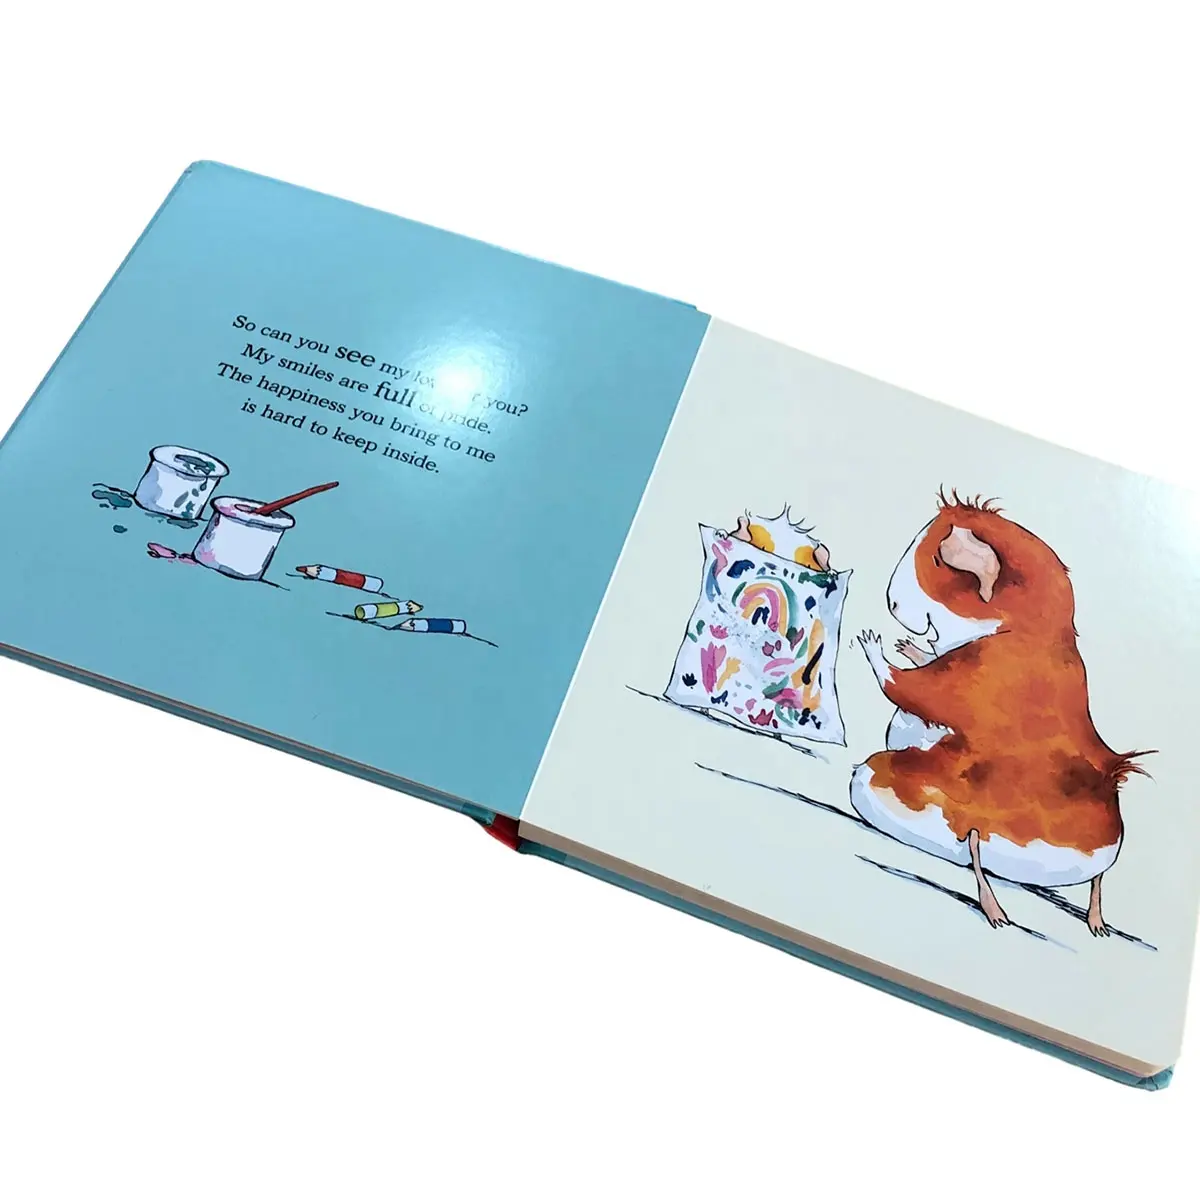 Fornitori all'ingrosso di cartone colorato stampato carta islamica libri per bambini per la stampa di carta e cartone